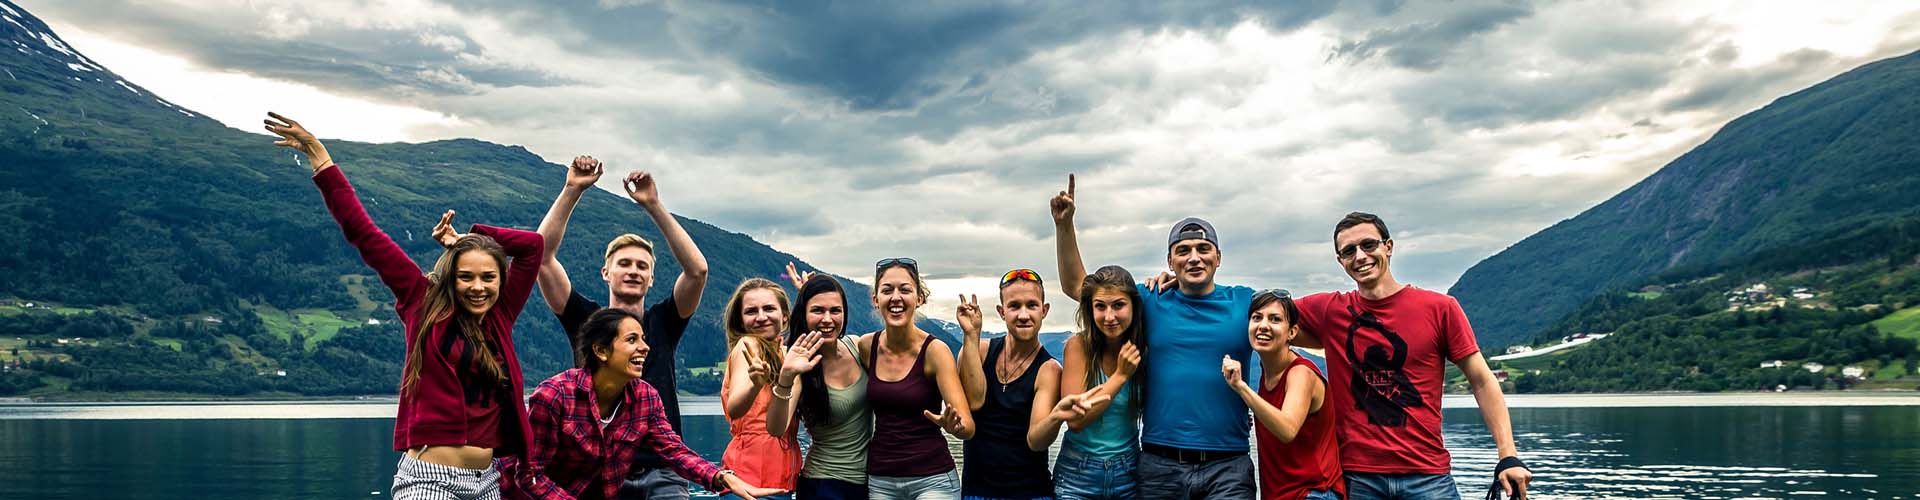 Gruppe von jungen Menschen in Urlaub, Gruppenreise, im Hintergrund Berge und See